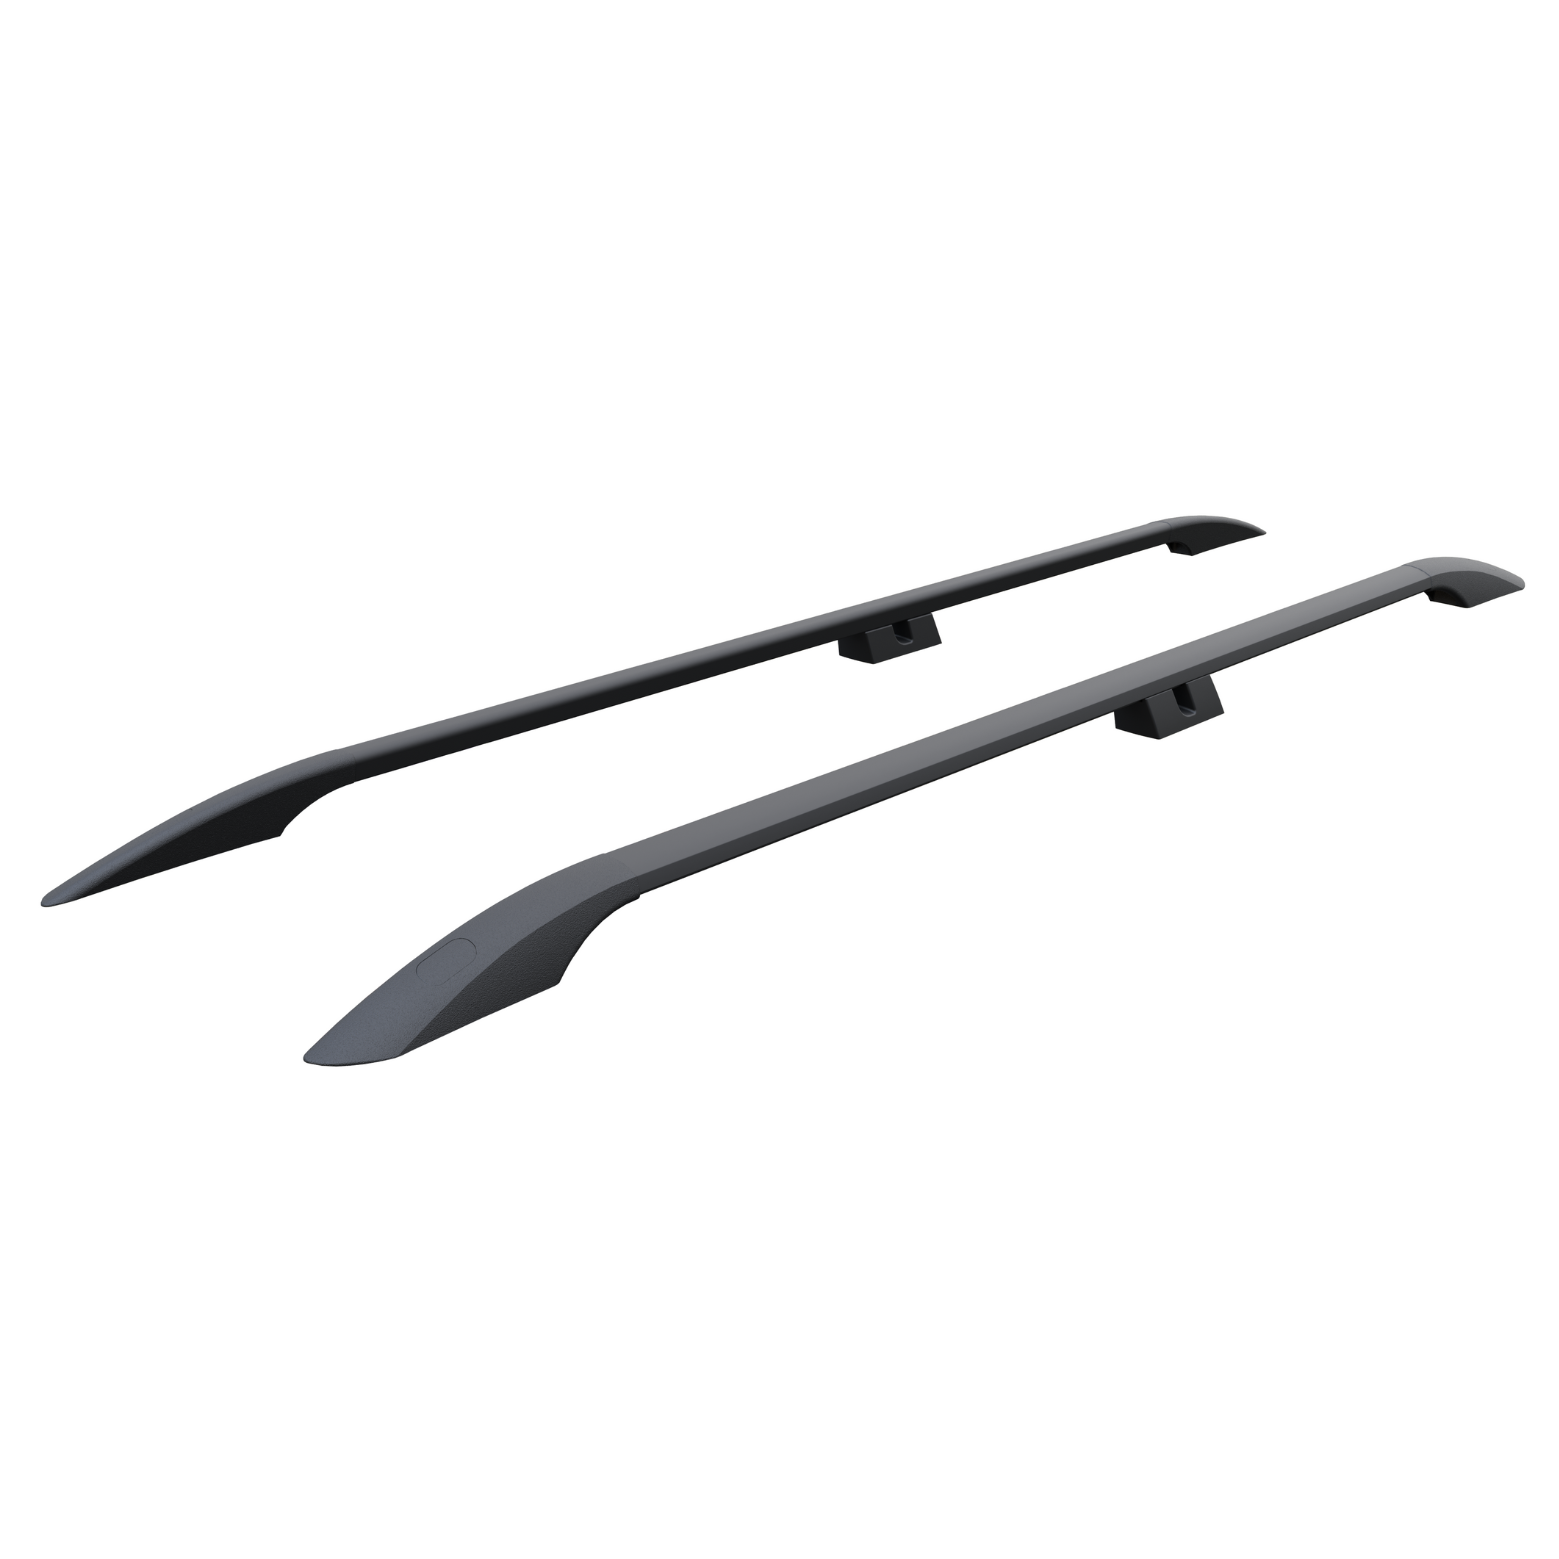 For Nissan NV250 2015-Up Roof Side Rails Ultimate Style Alu Black